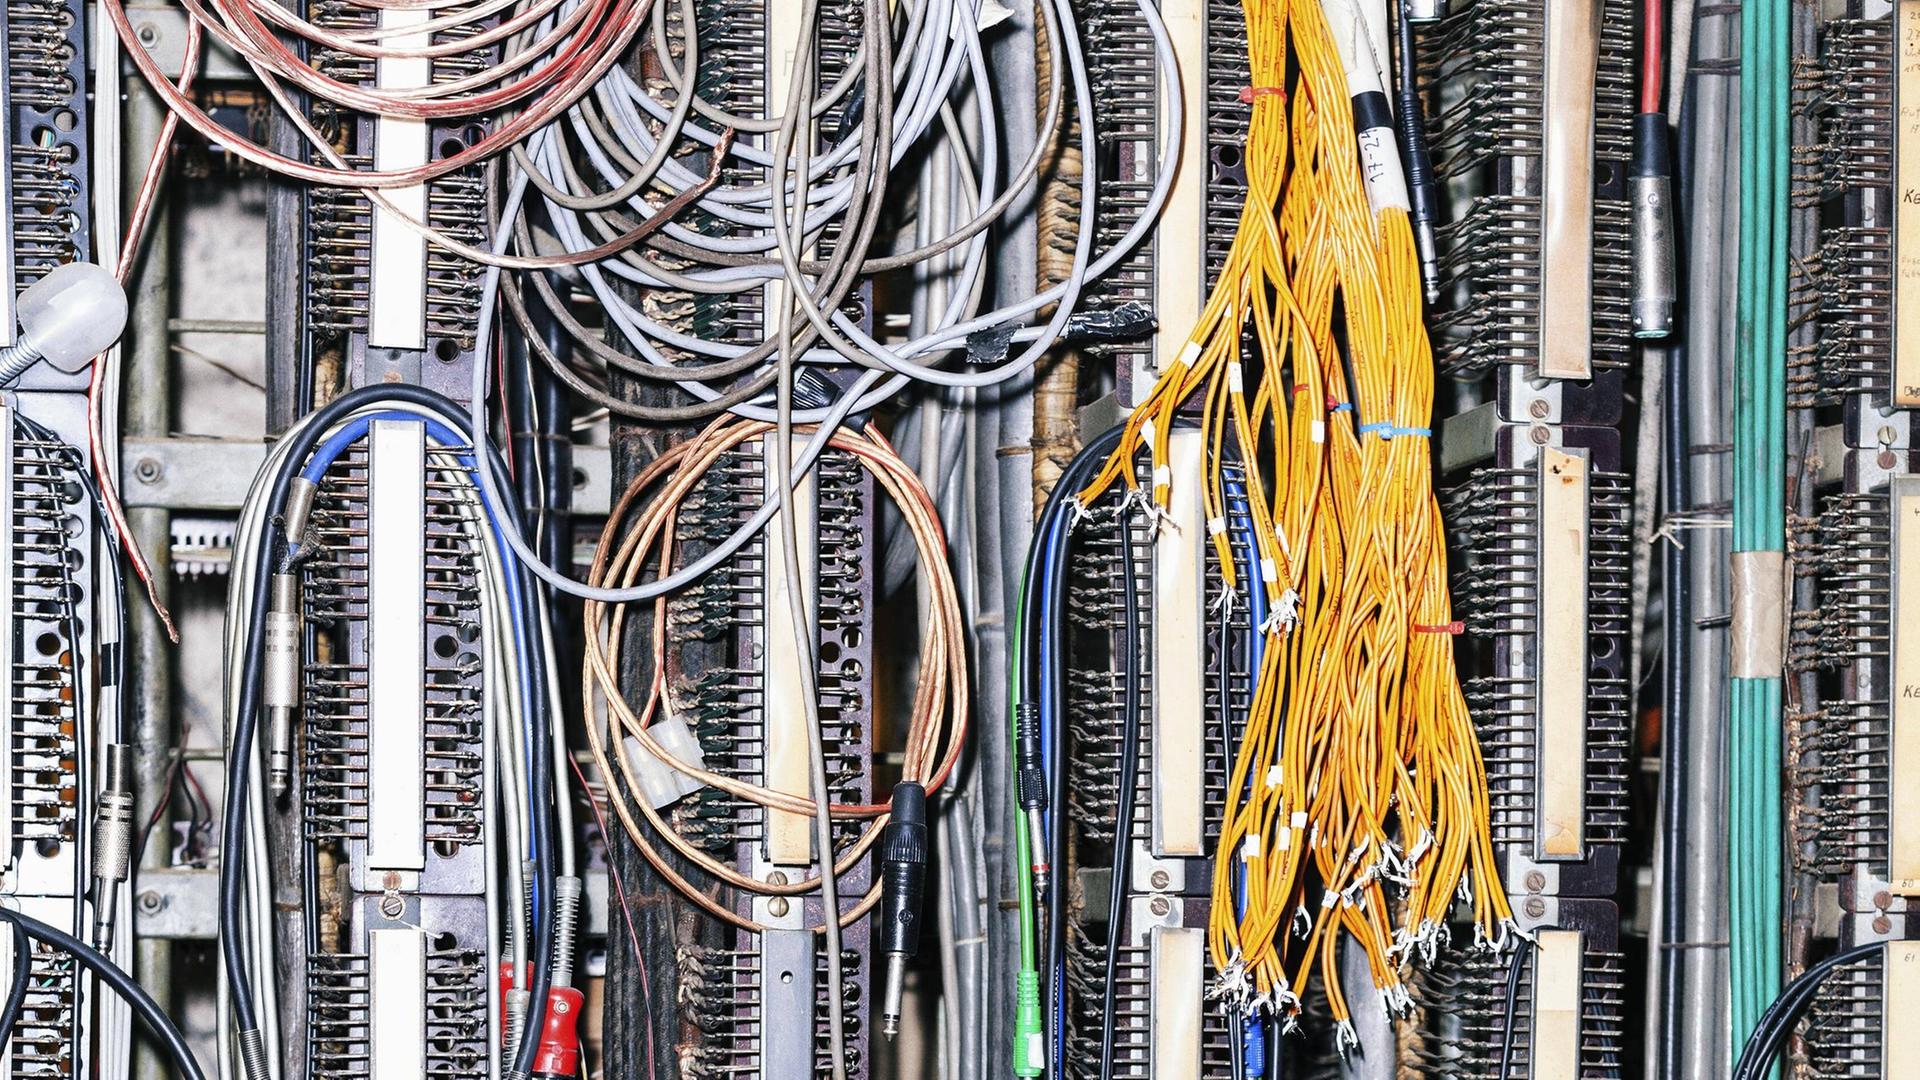 Aufnahme eines Netzwerkservers mit zahllosen bunten Kabeln.